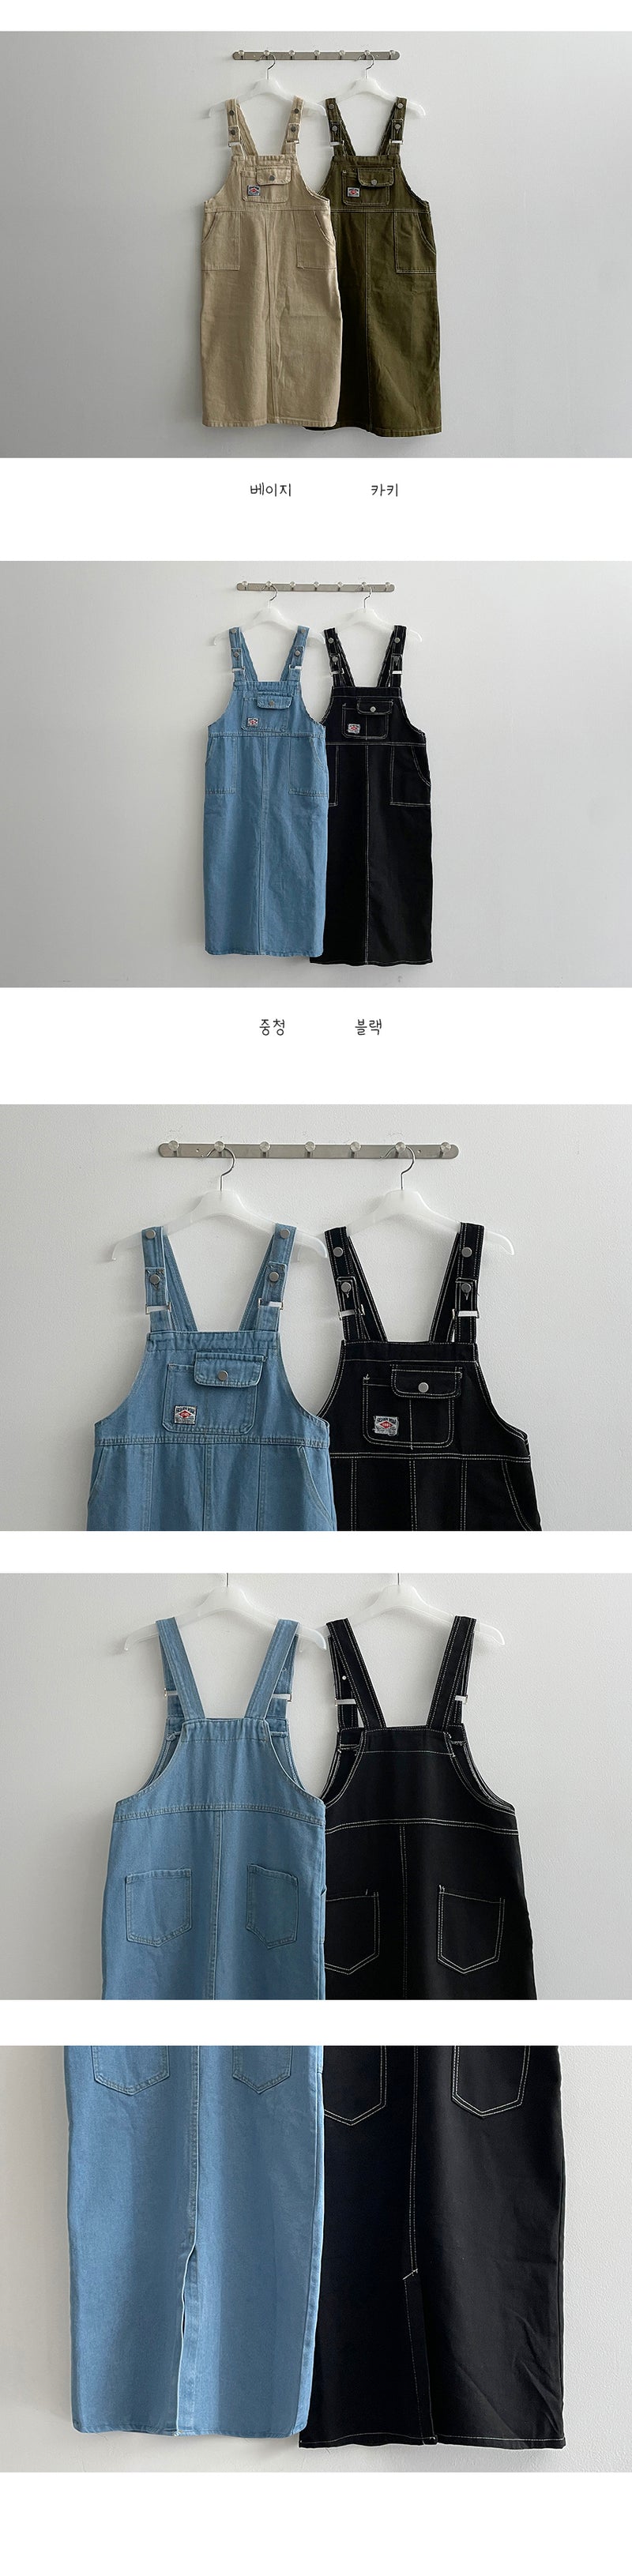 ティンクステッチポケットサスペンダードレス / Tinku Stitch Pocket Suspender Dress